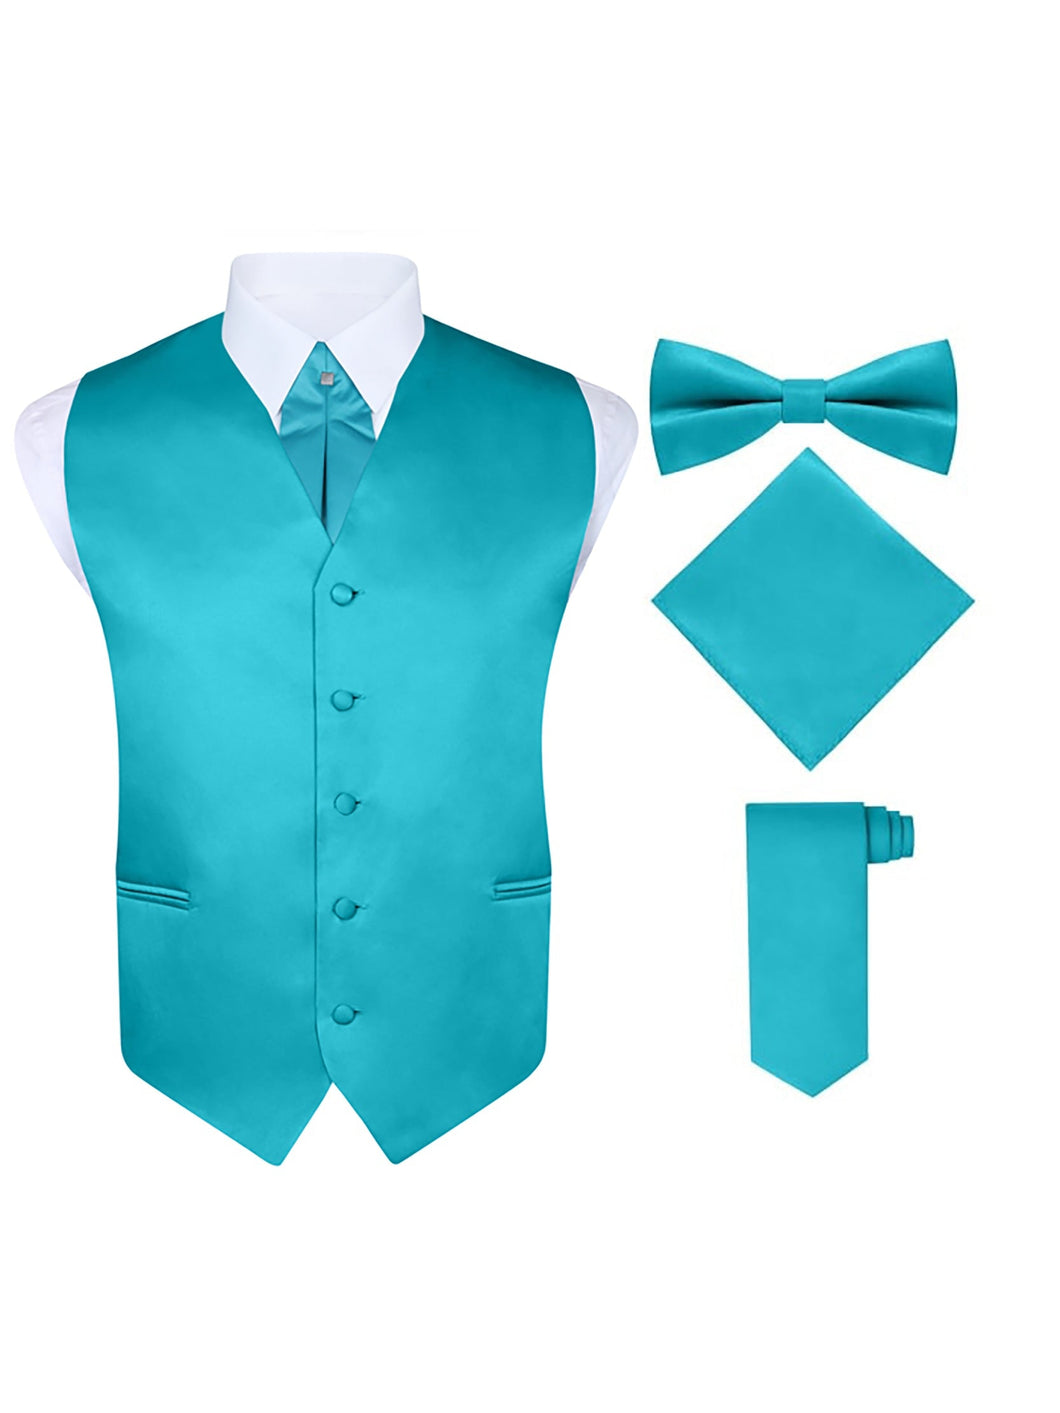 S.H. Churchill & Co. Men's 5 Piece Vest Set, with Cravat, Bow Tie, Neck Tie & Pocket Hanky-Teal